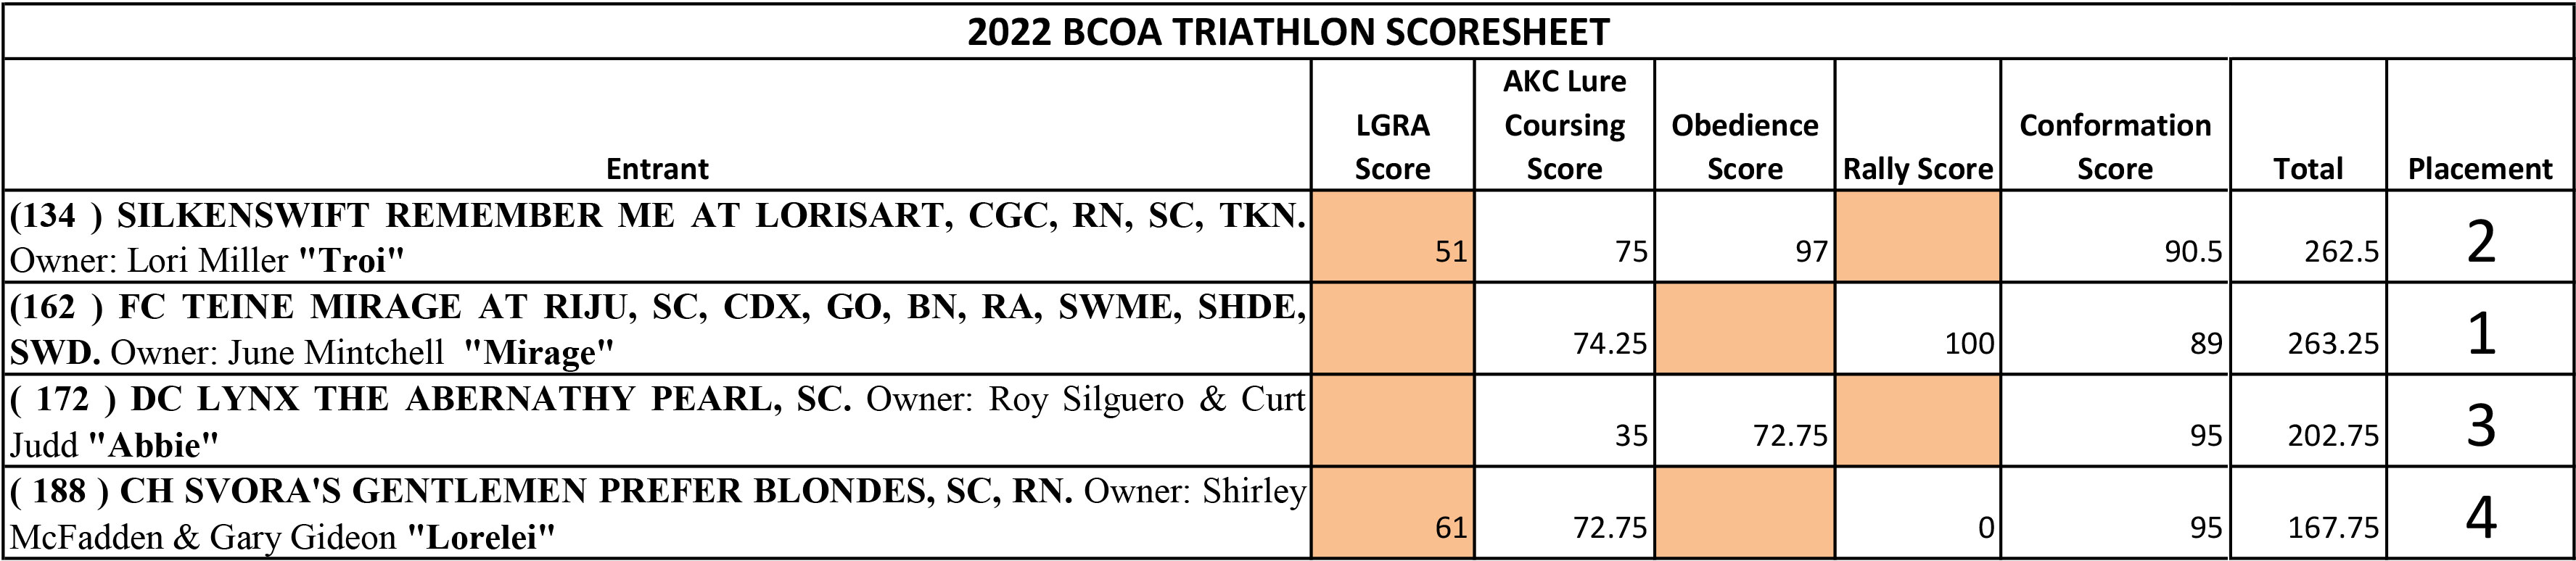 2022 Triathlon Scores